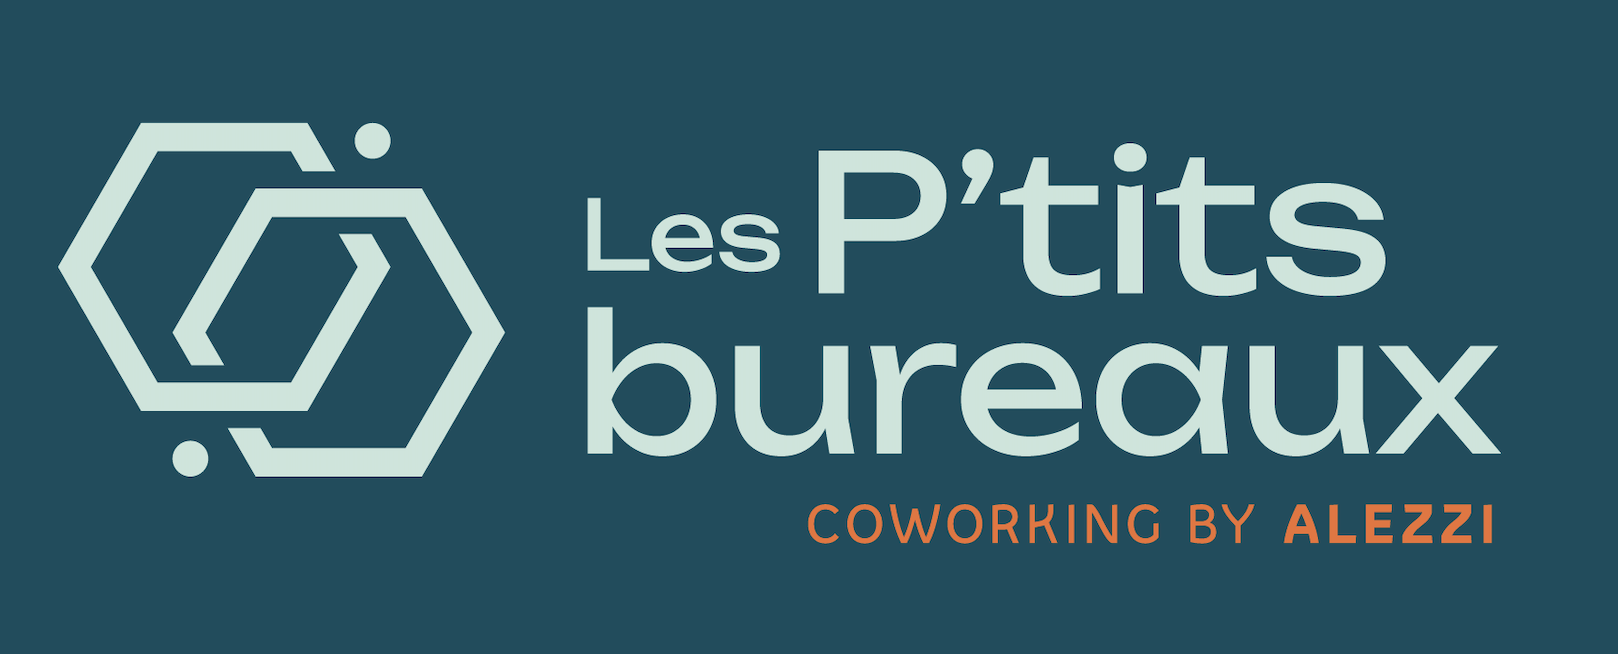 logo-les-ptits-bureaux